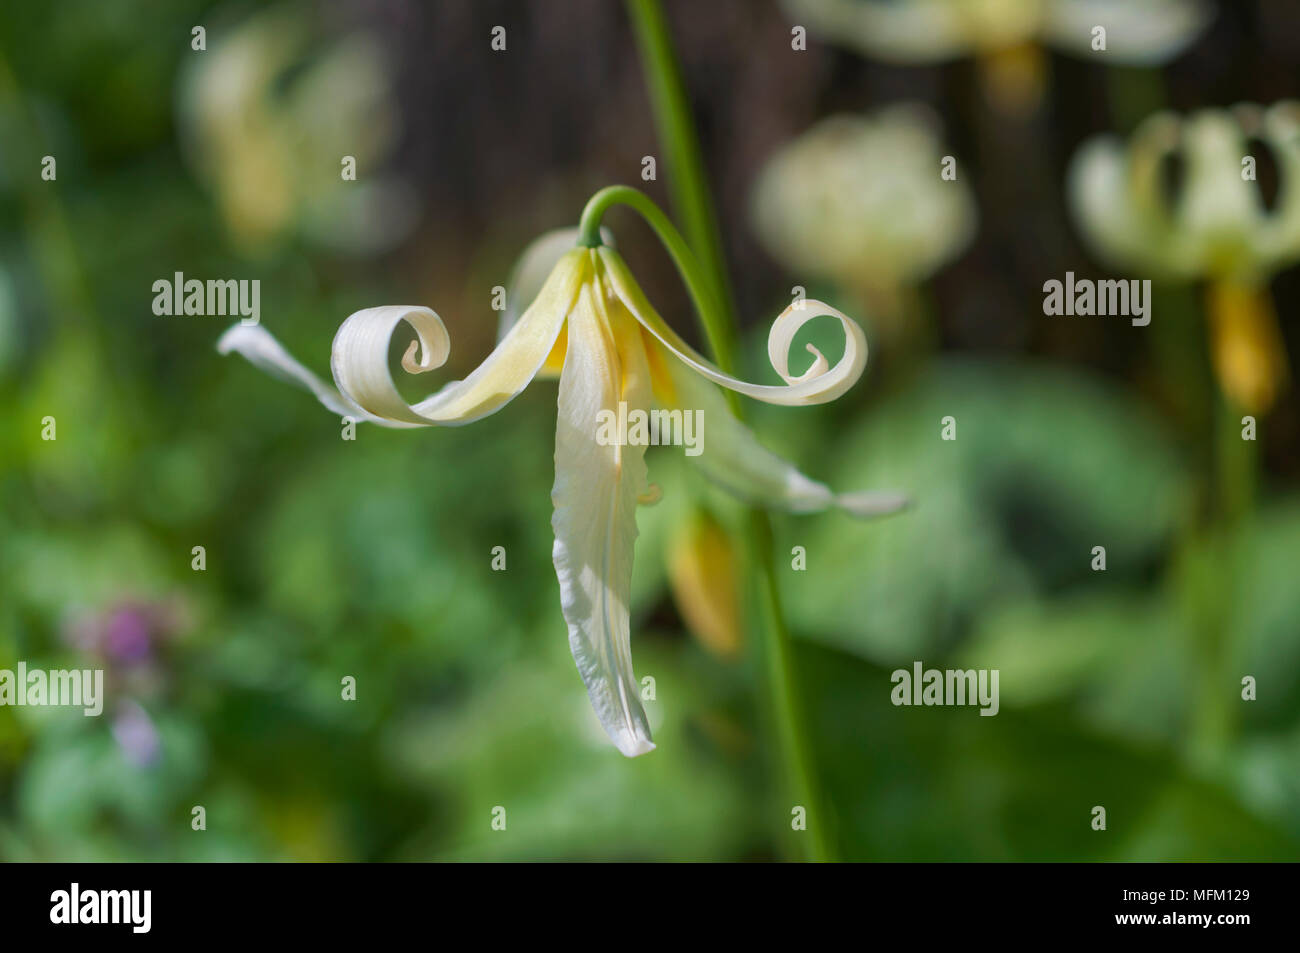 Gros plan du single white fawn lily fleur avec pétales recourbés lunatique en position verticale Banque D'Images